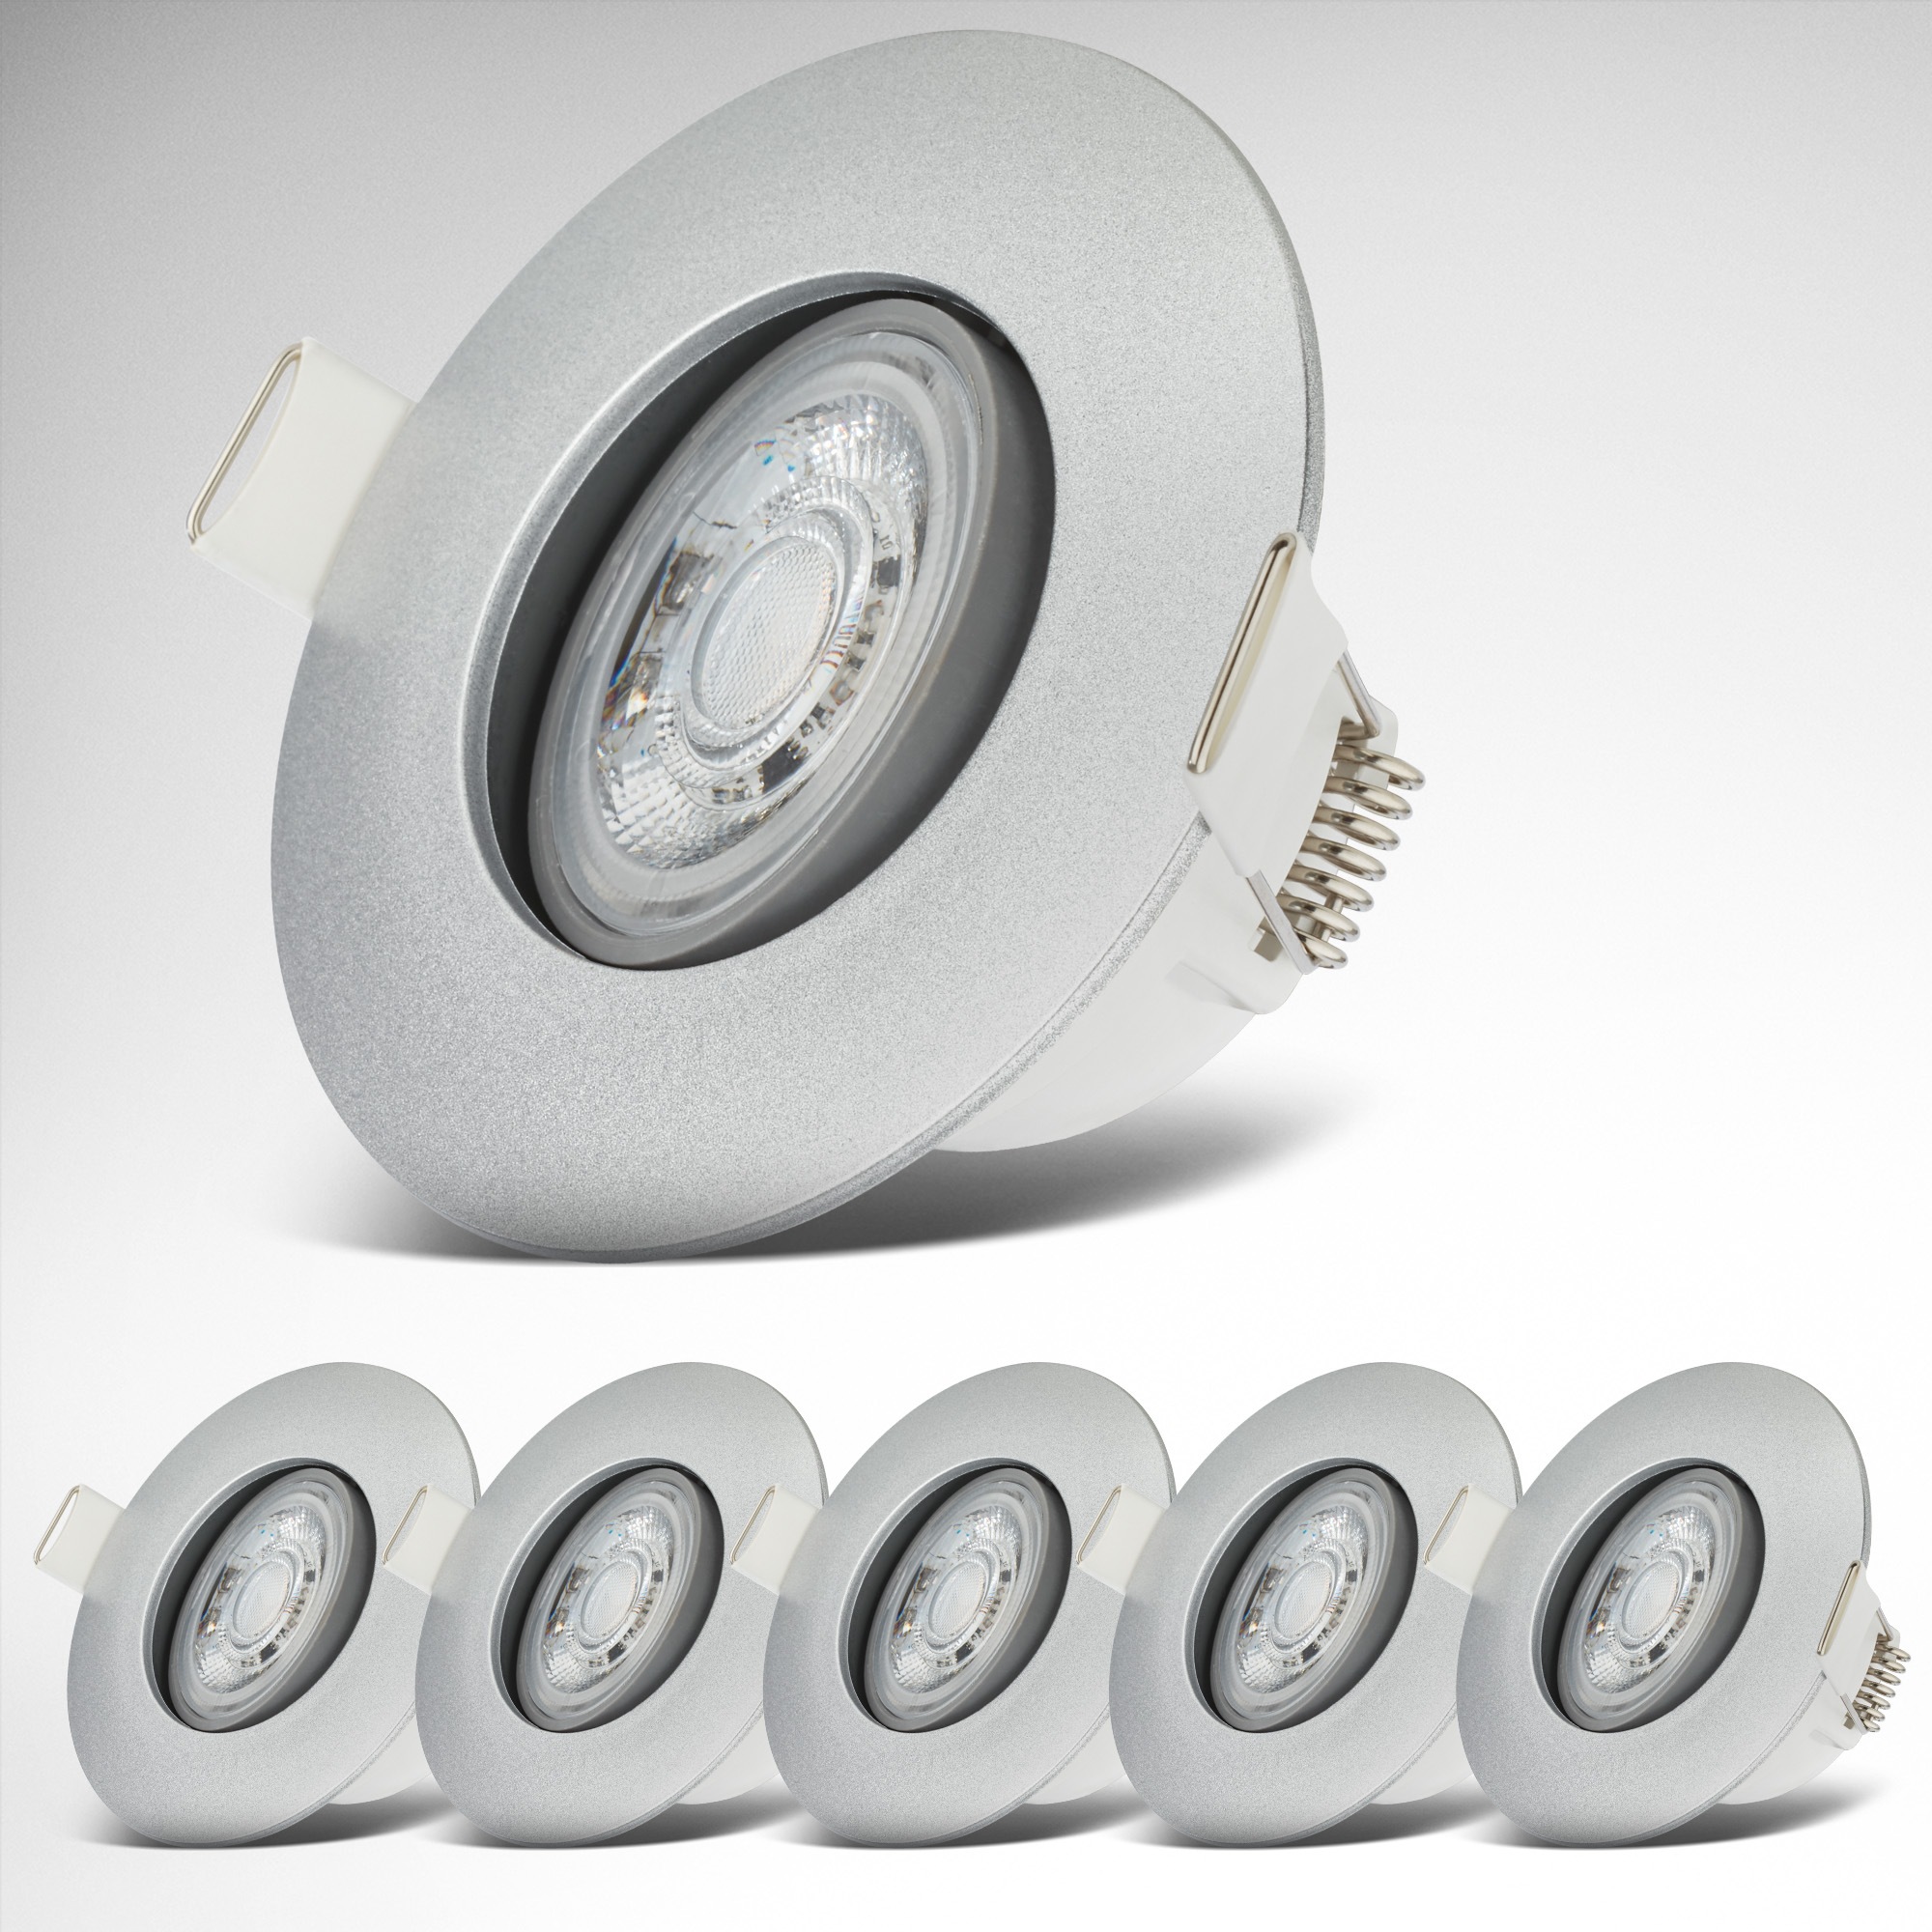 LED Bad-Einbauleuchten-Set, 6-teilig, Schutzart IP65, Strahler schwenkbar